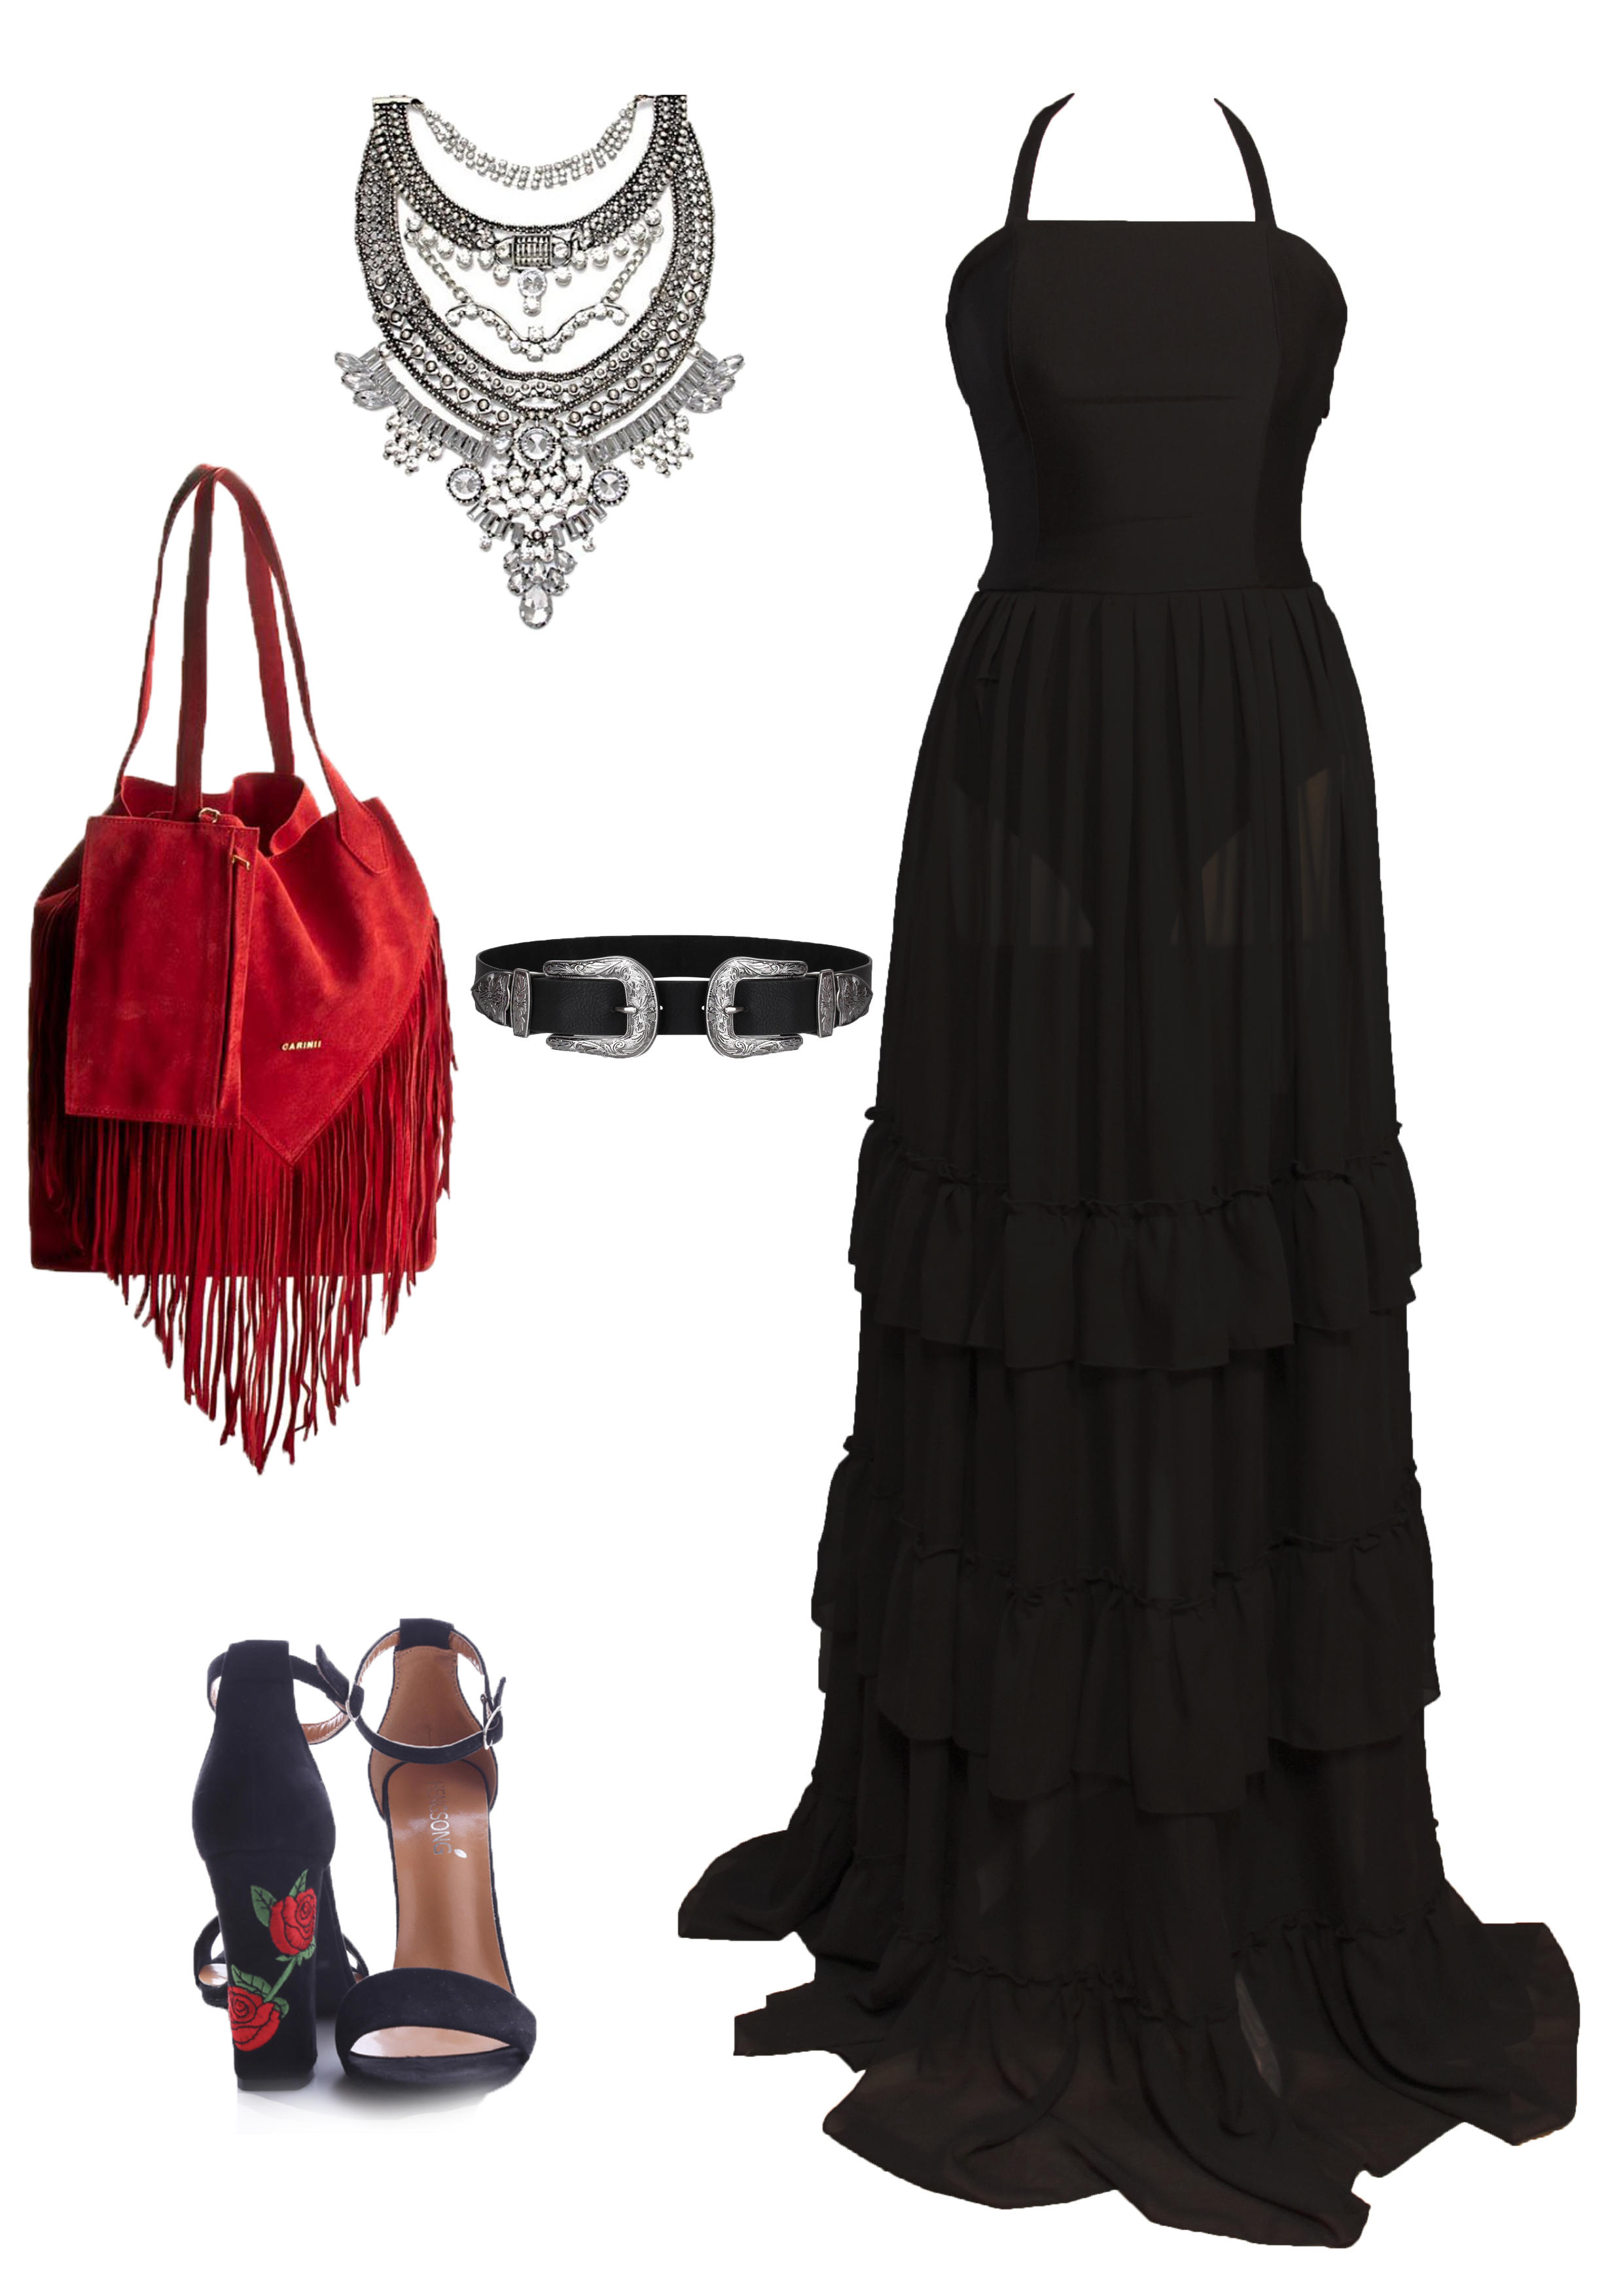 Czarna suknia - podstawa stylizacji